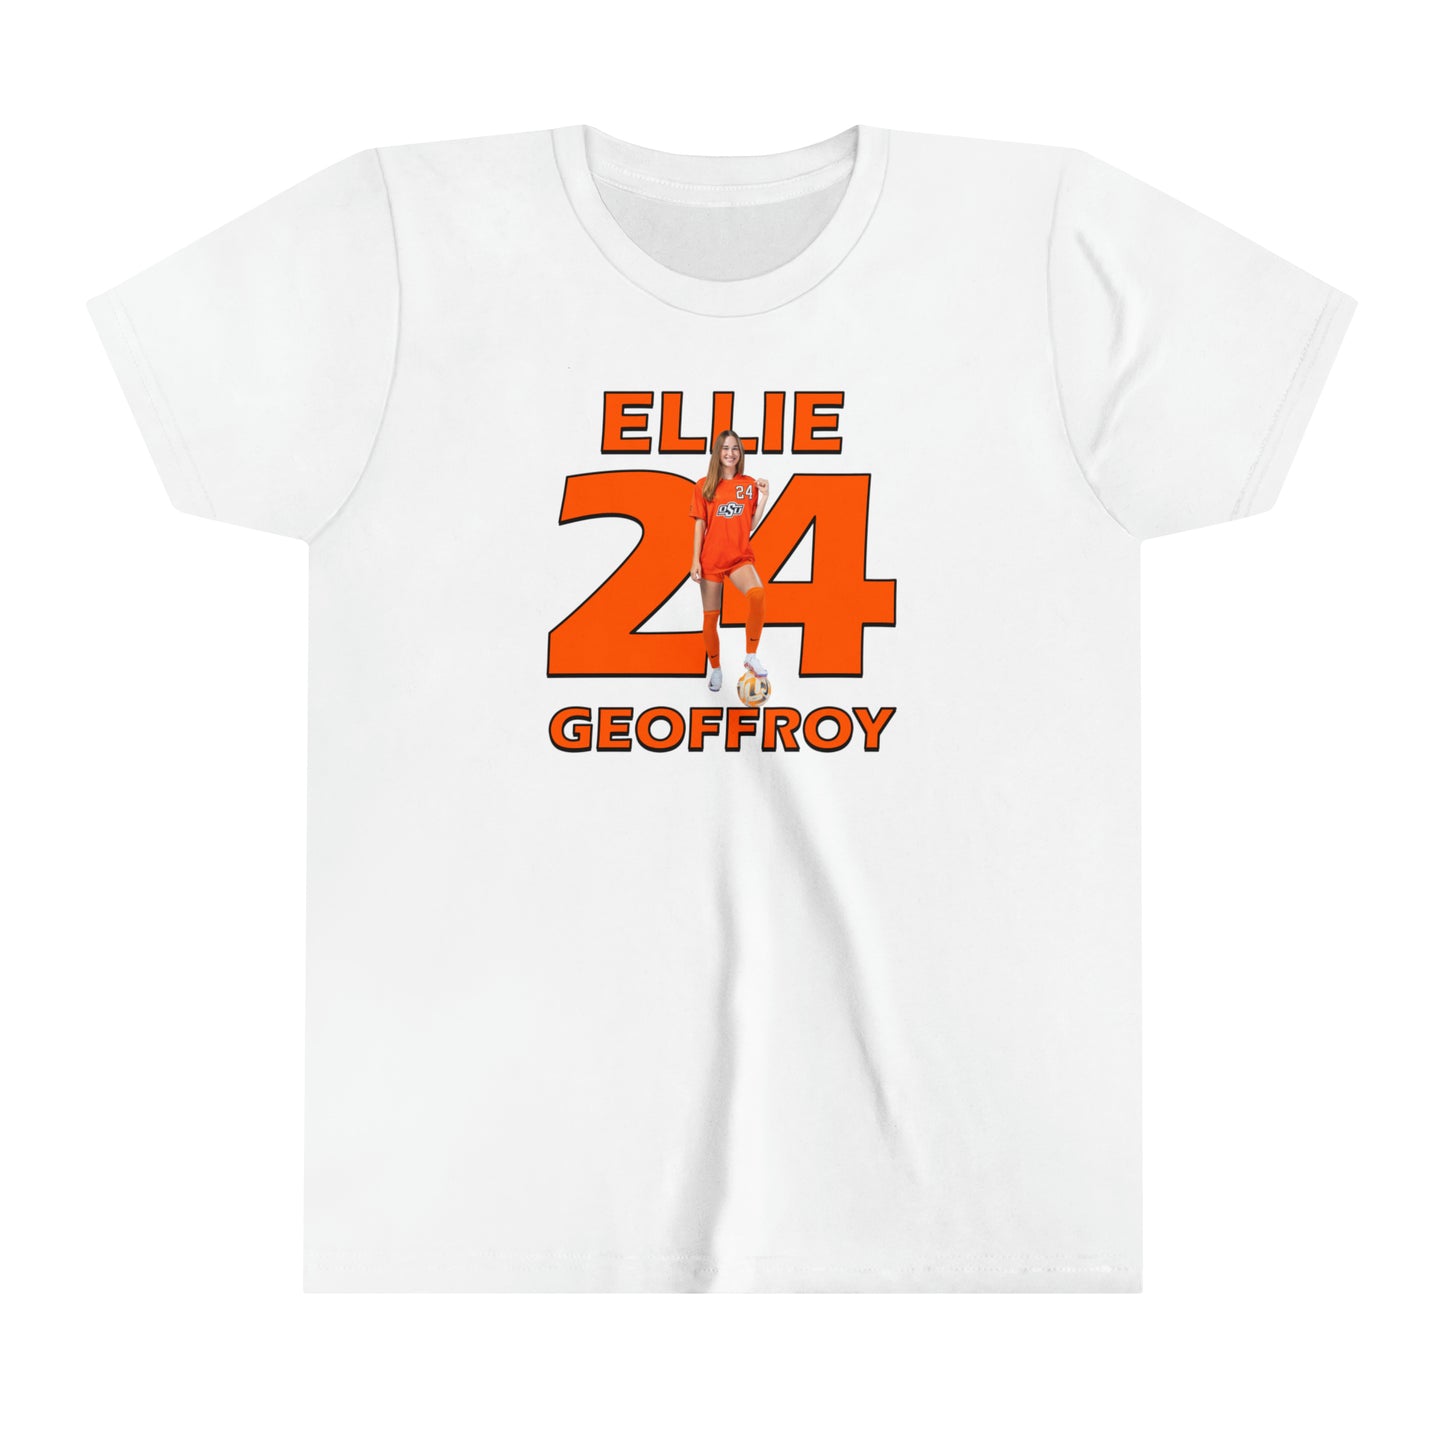 Ellie Geoffroy Youth T-Shirt